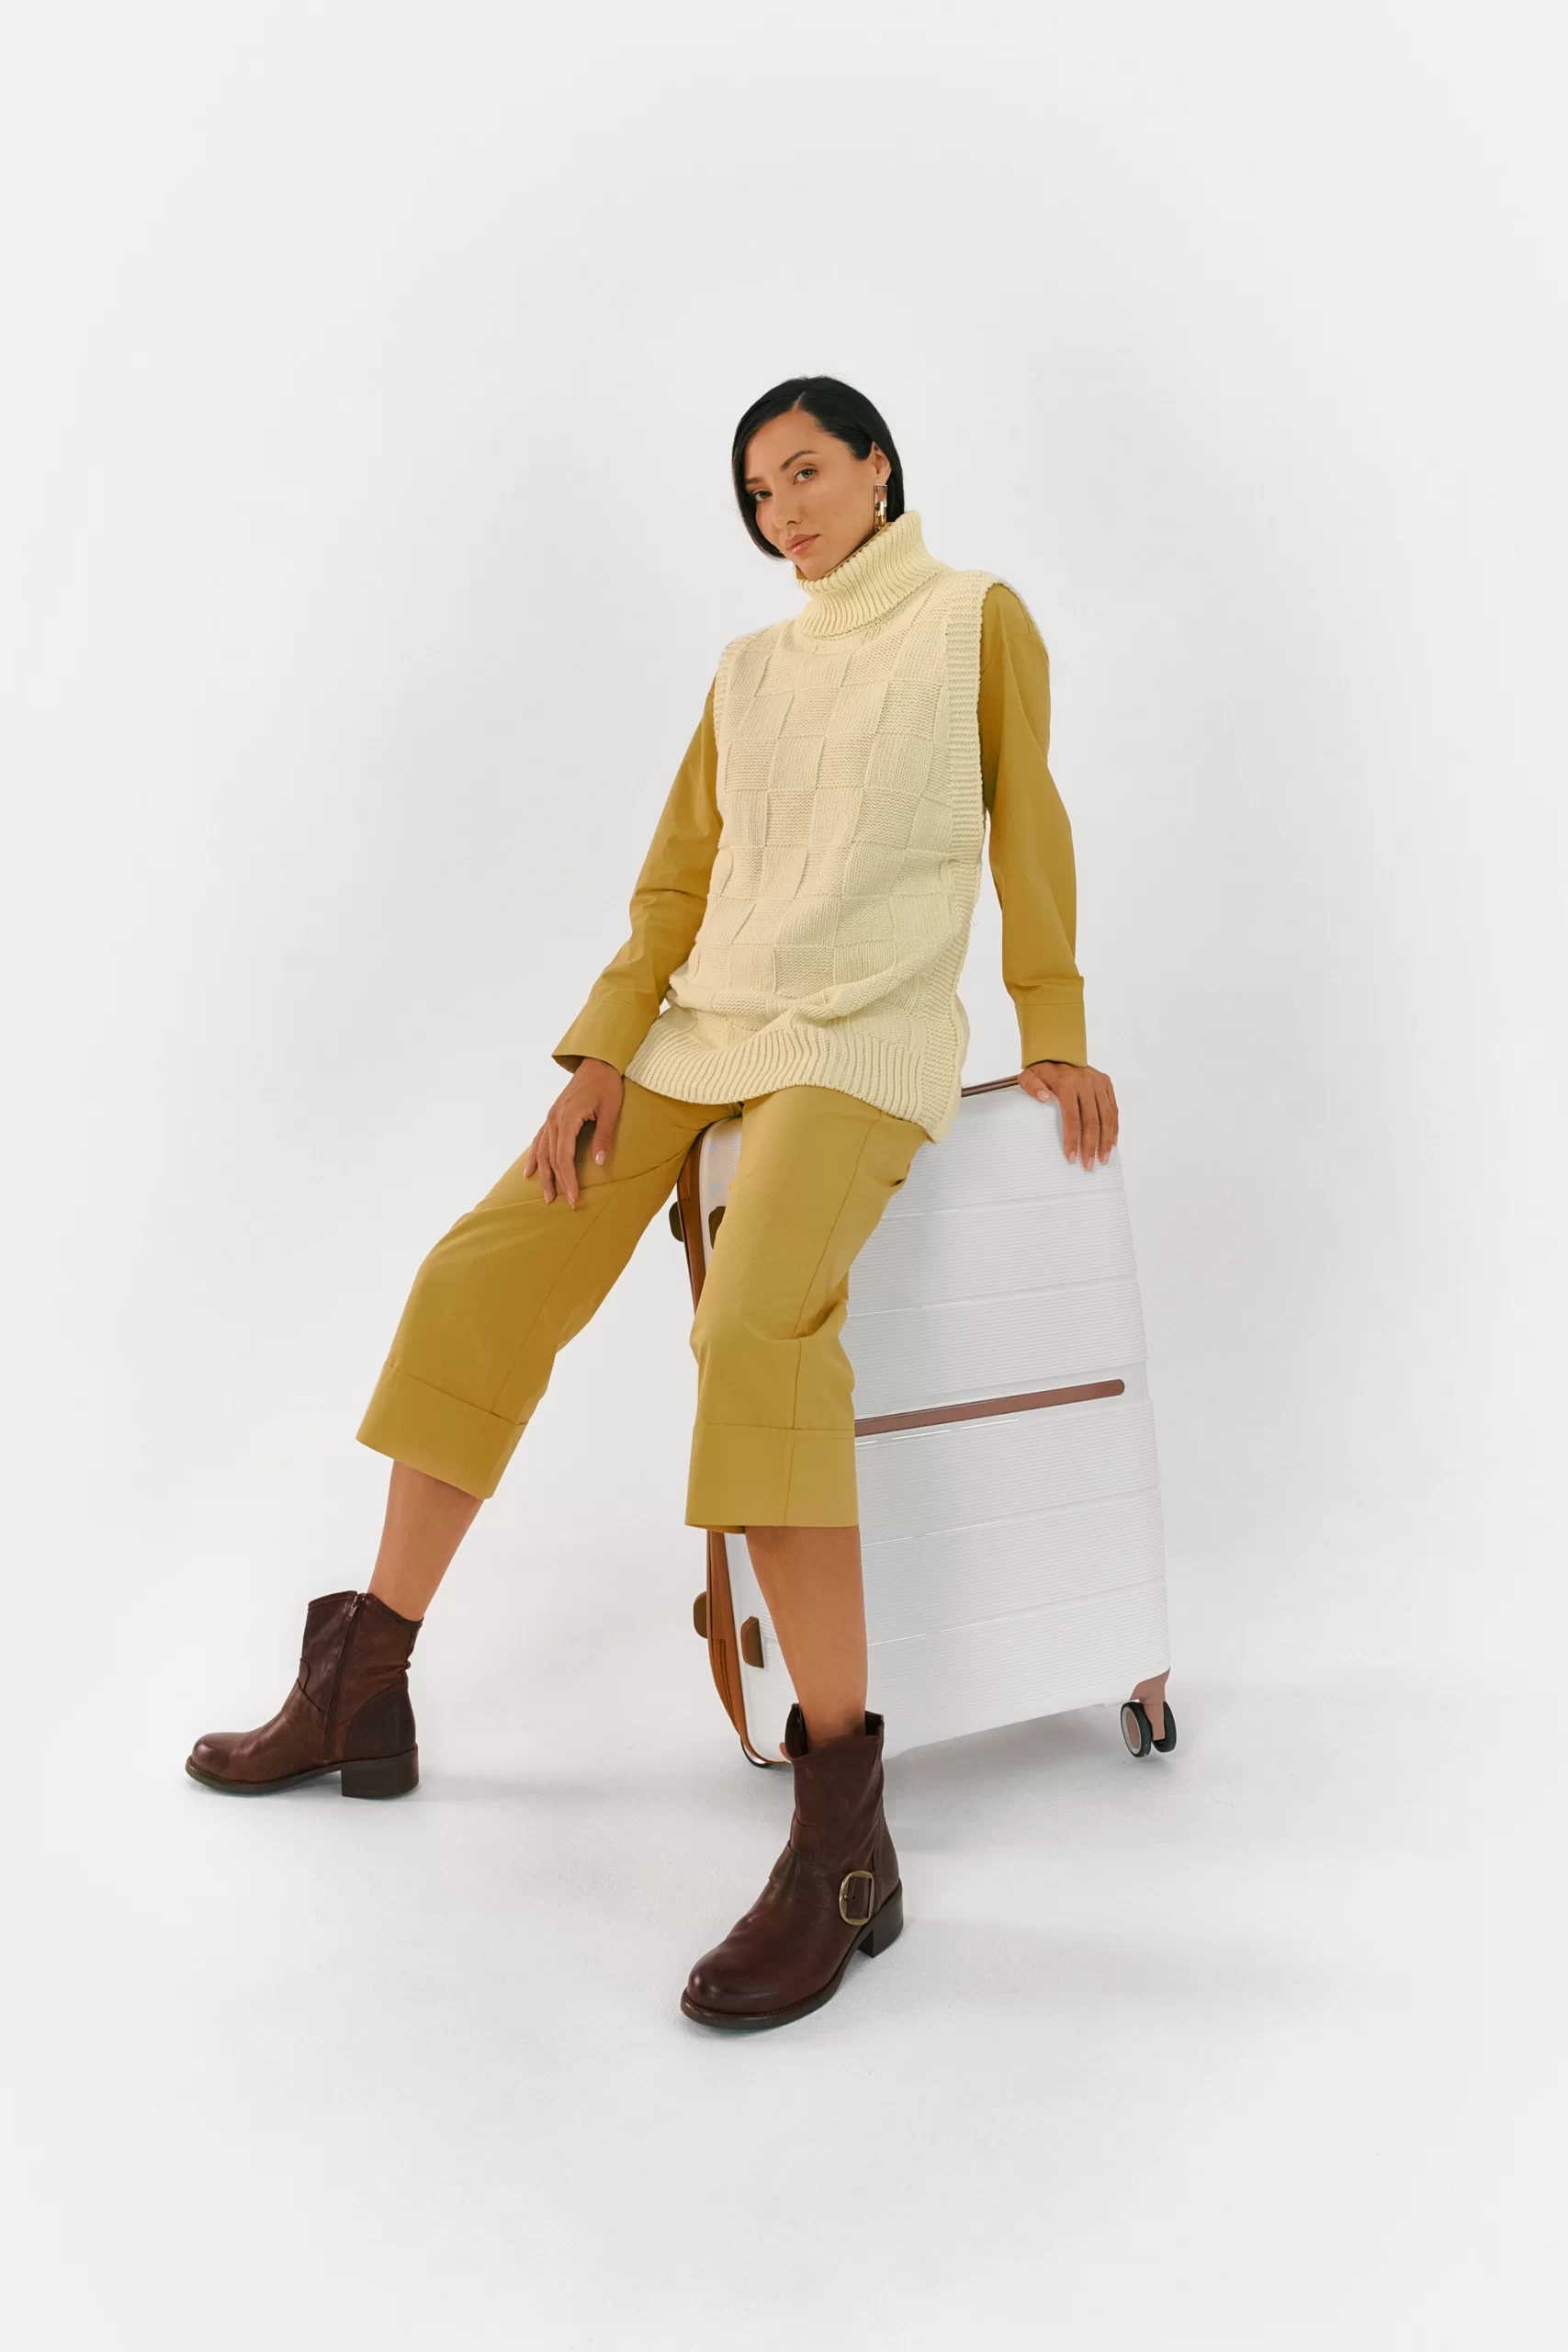 Campaña Publicidad de Calzado, Moda YOKONO - Contenido audiovisual para la marca